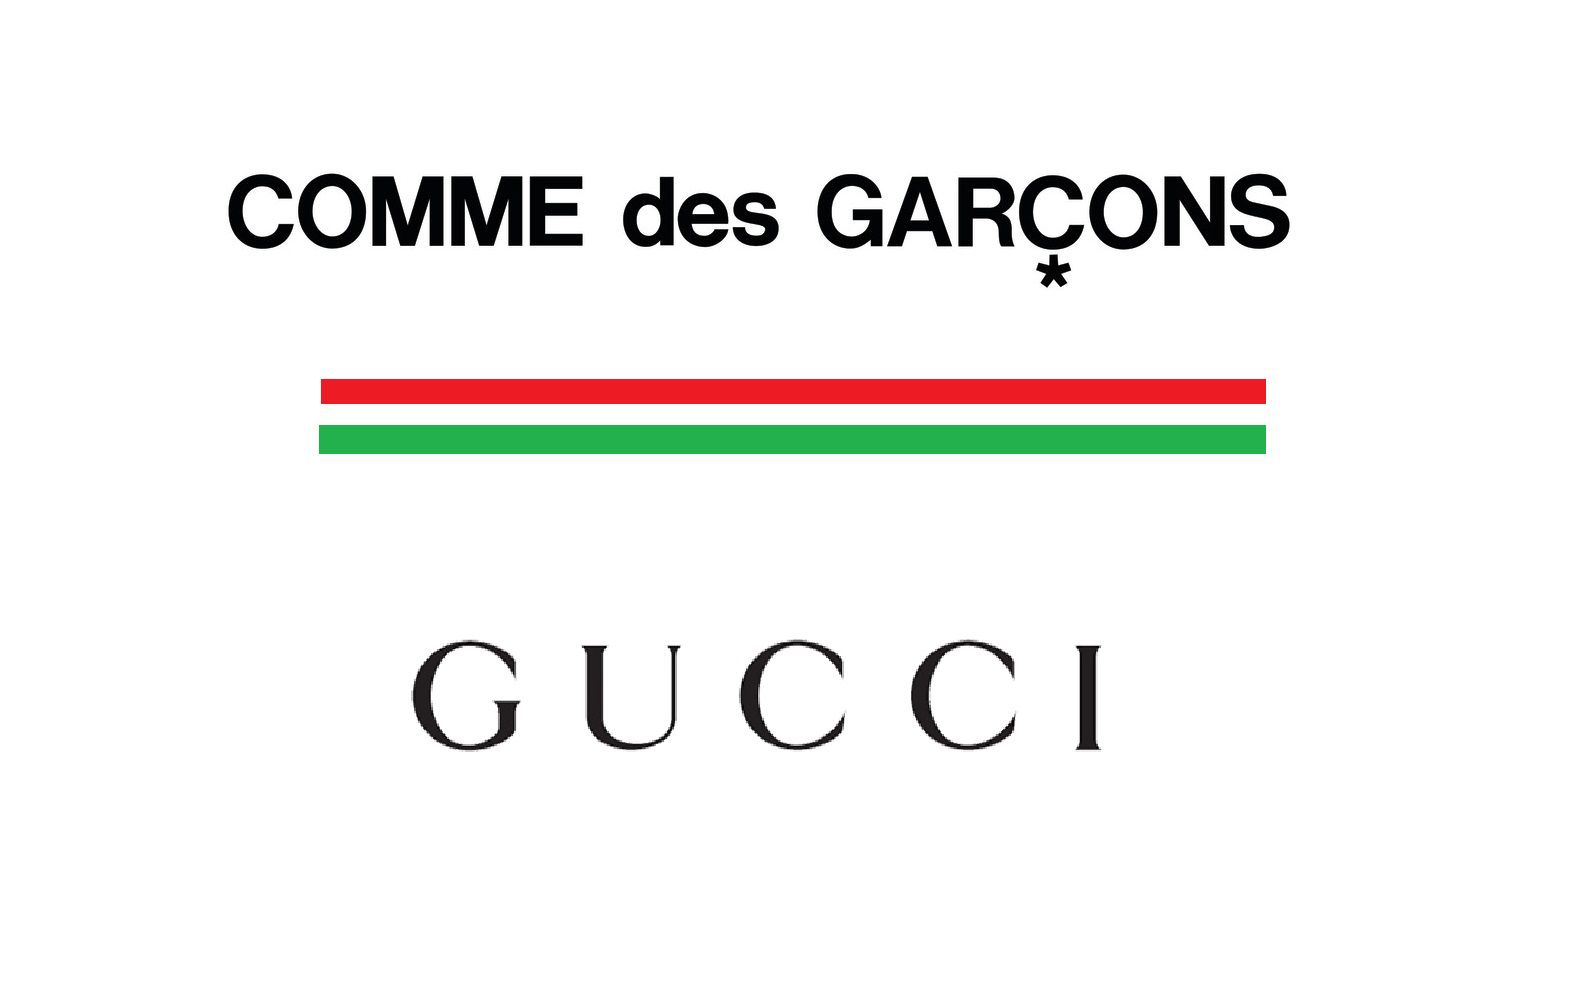 Gucci collaborates with Comme des Garçons